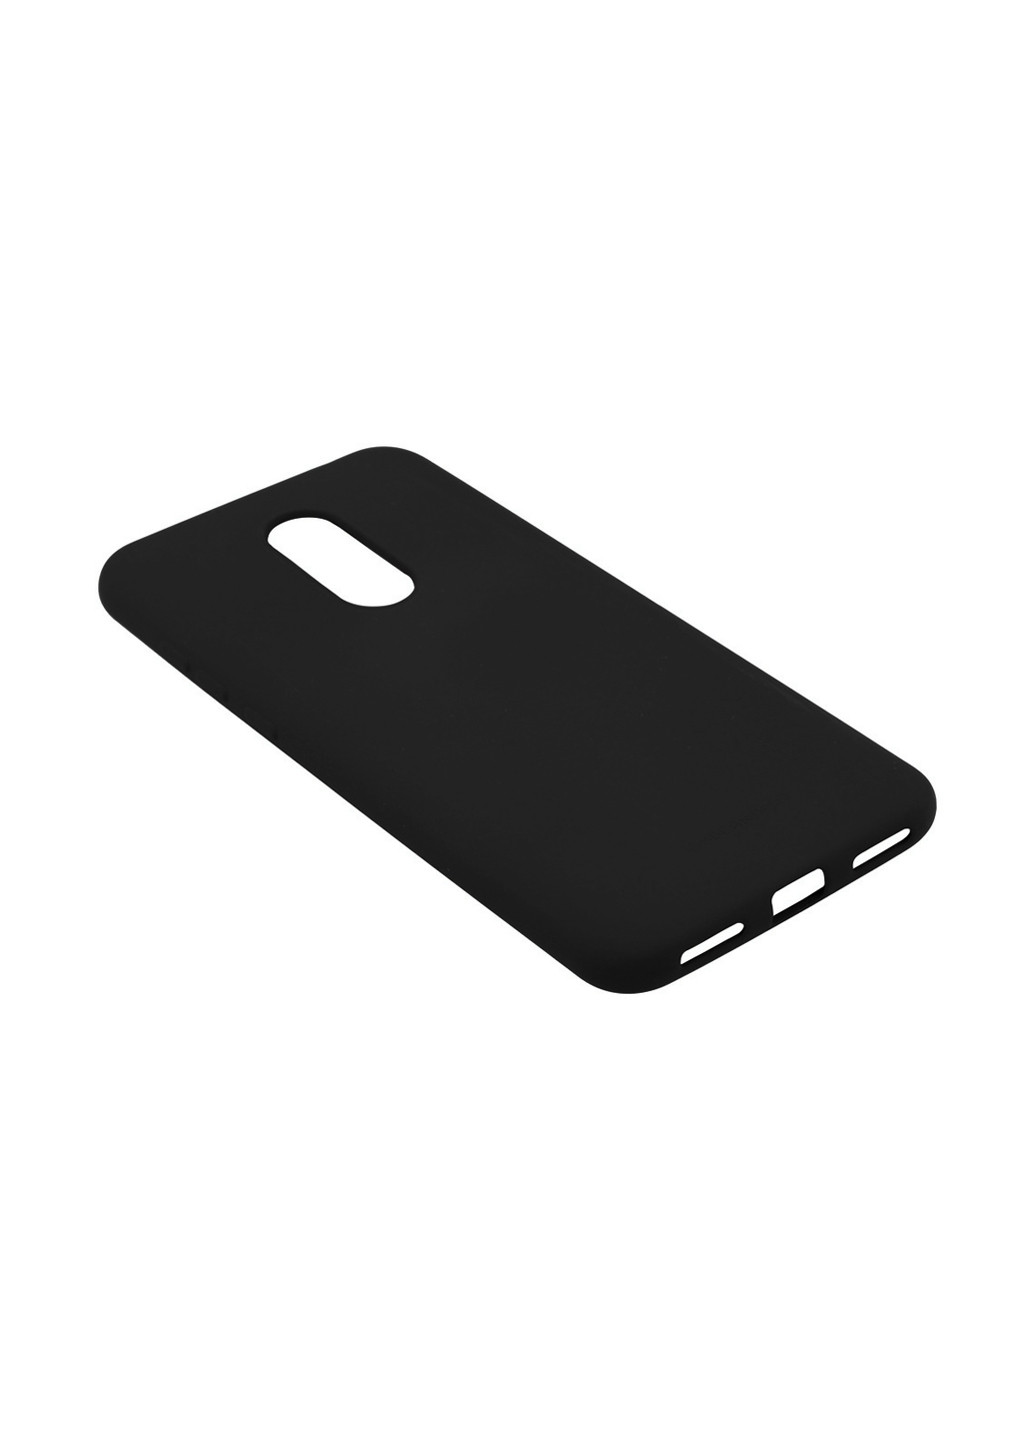 Панель Matte Slim TPU для Xiaomi Redmi 5 Plus Black (702725) BeCover matte slim tpu для xiaomi redmi 5 plus black (702725) (147837864)